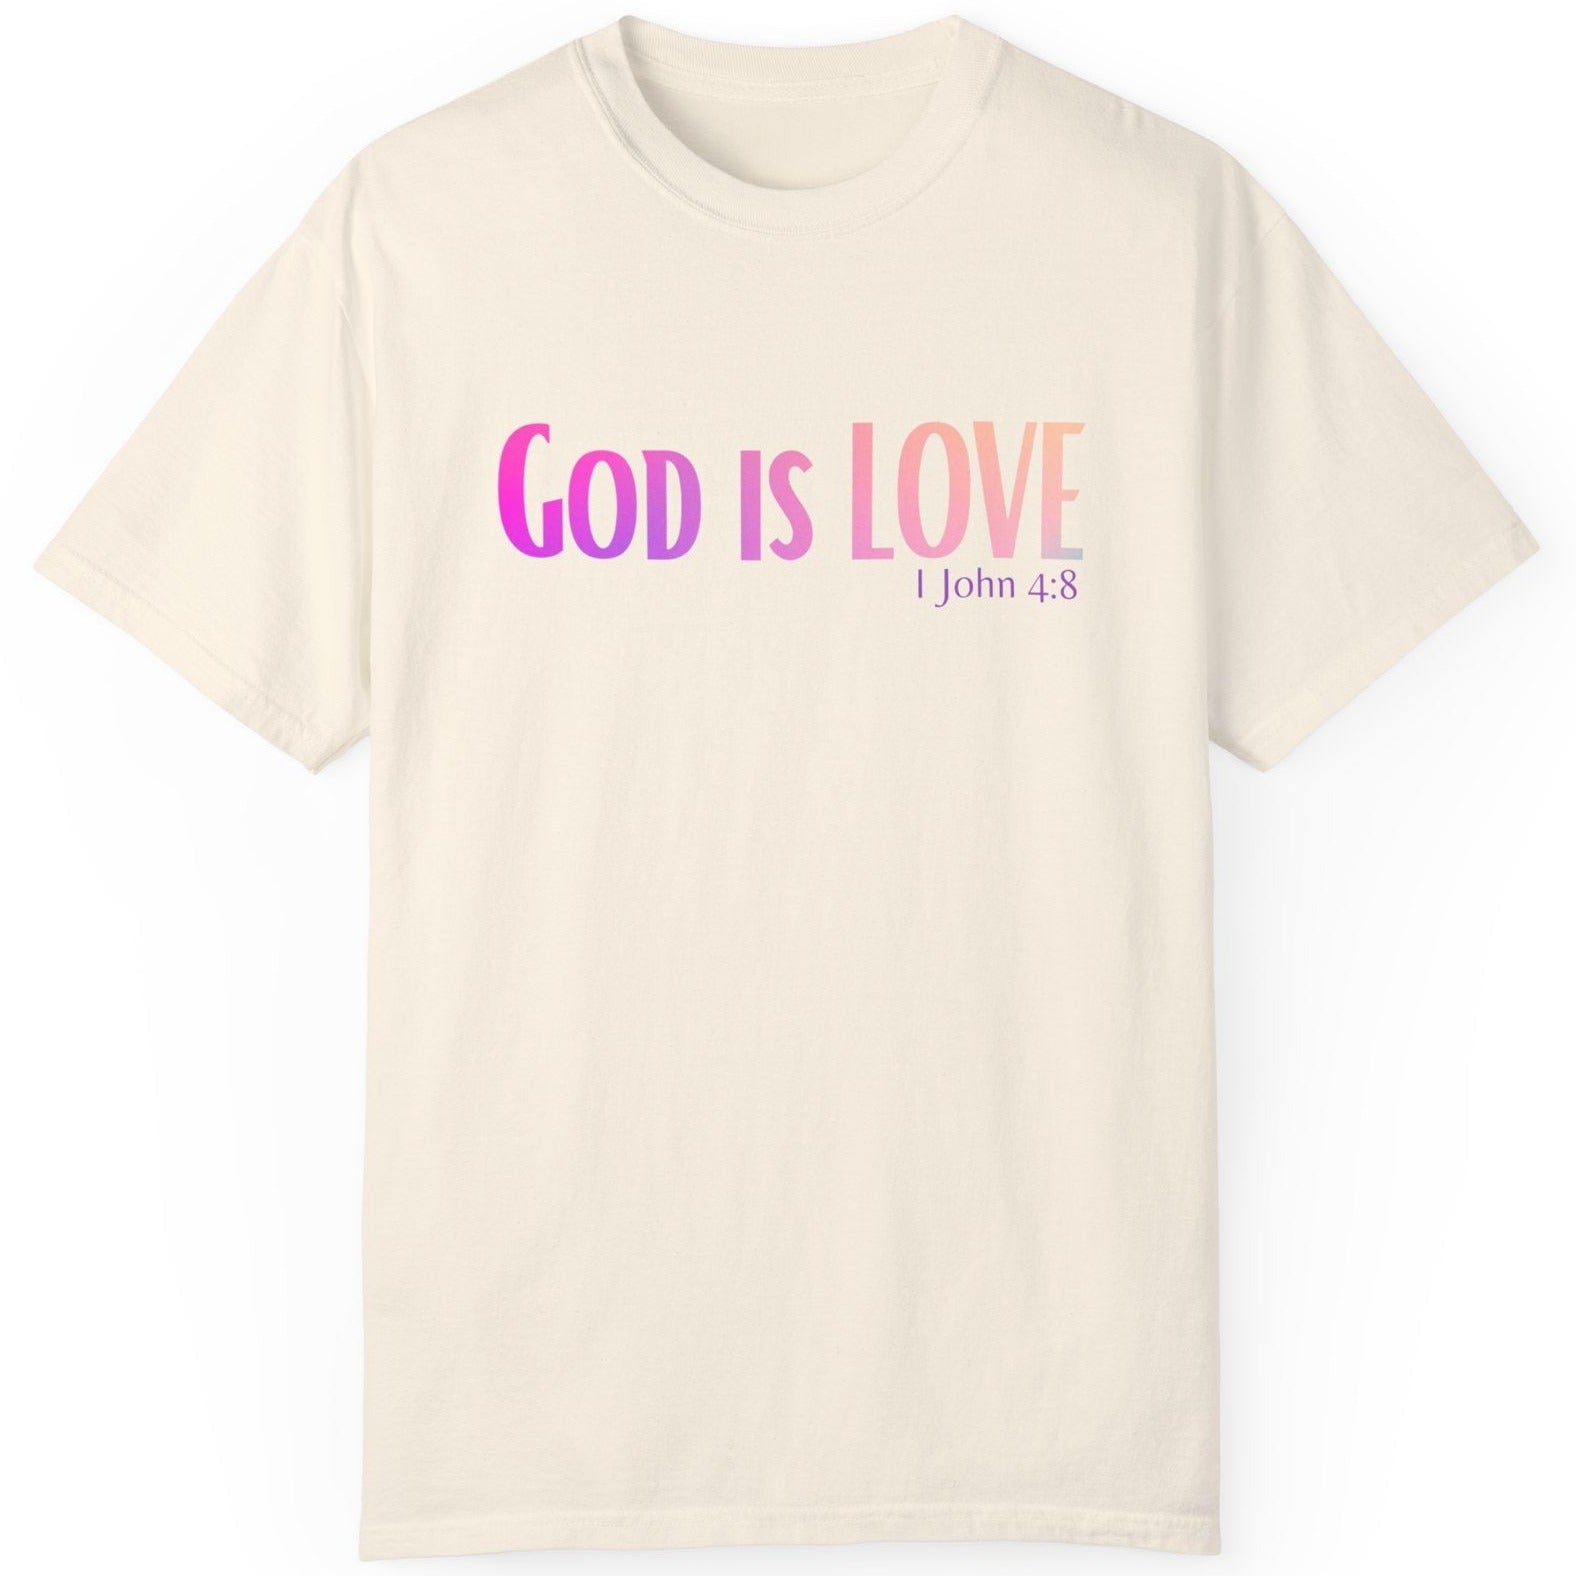 1 John 4:8 God is Love, Christian Garment-Dyed T-shirt for men and women ivory